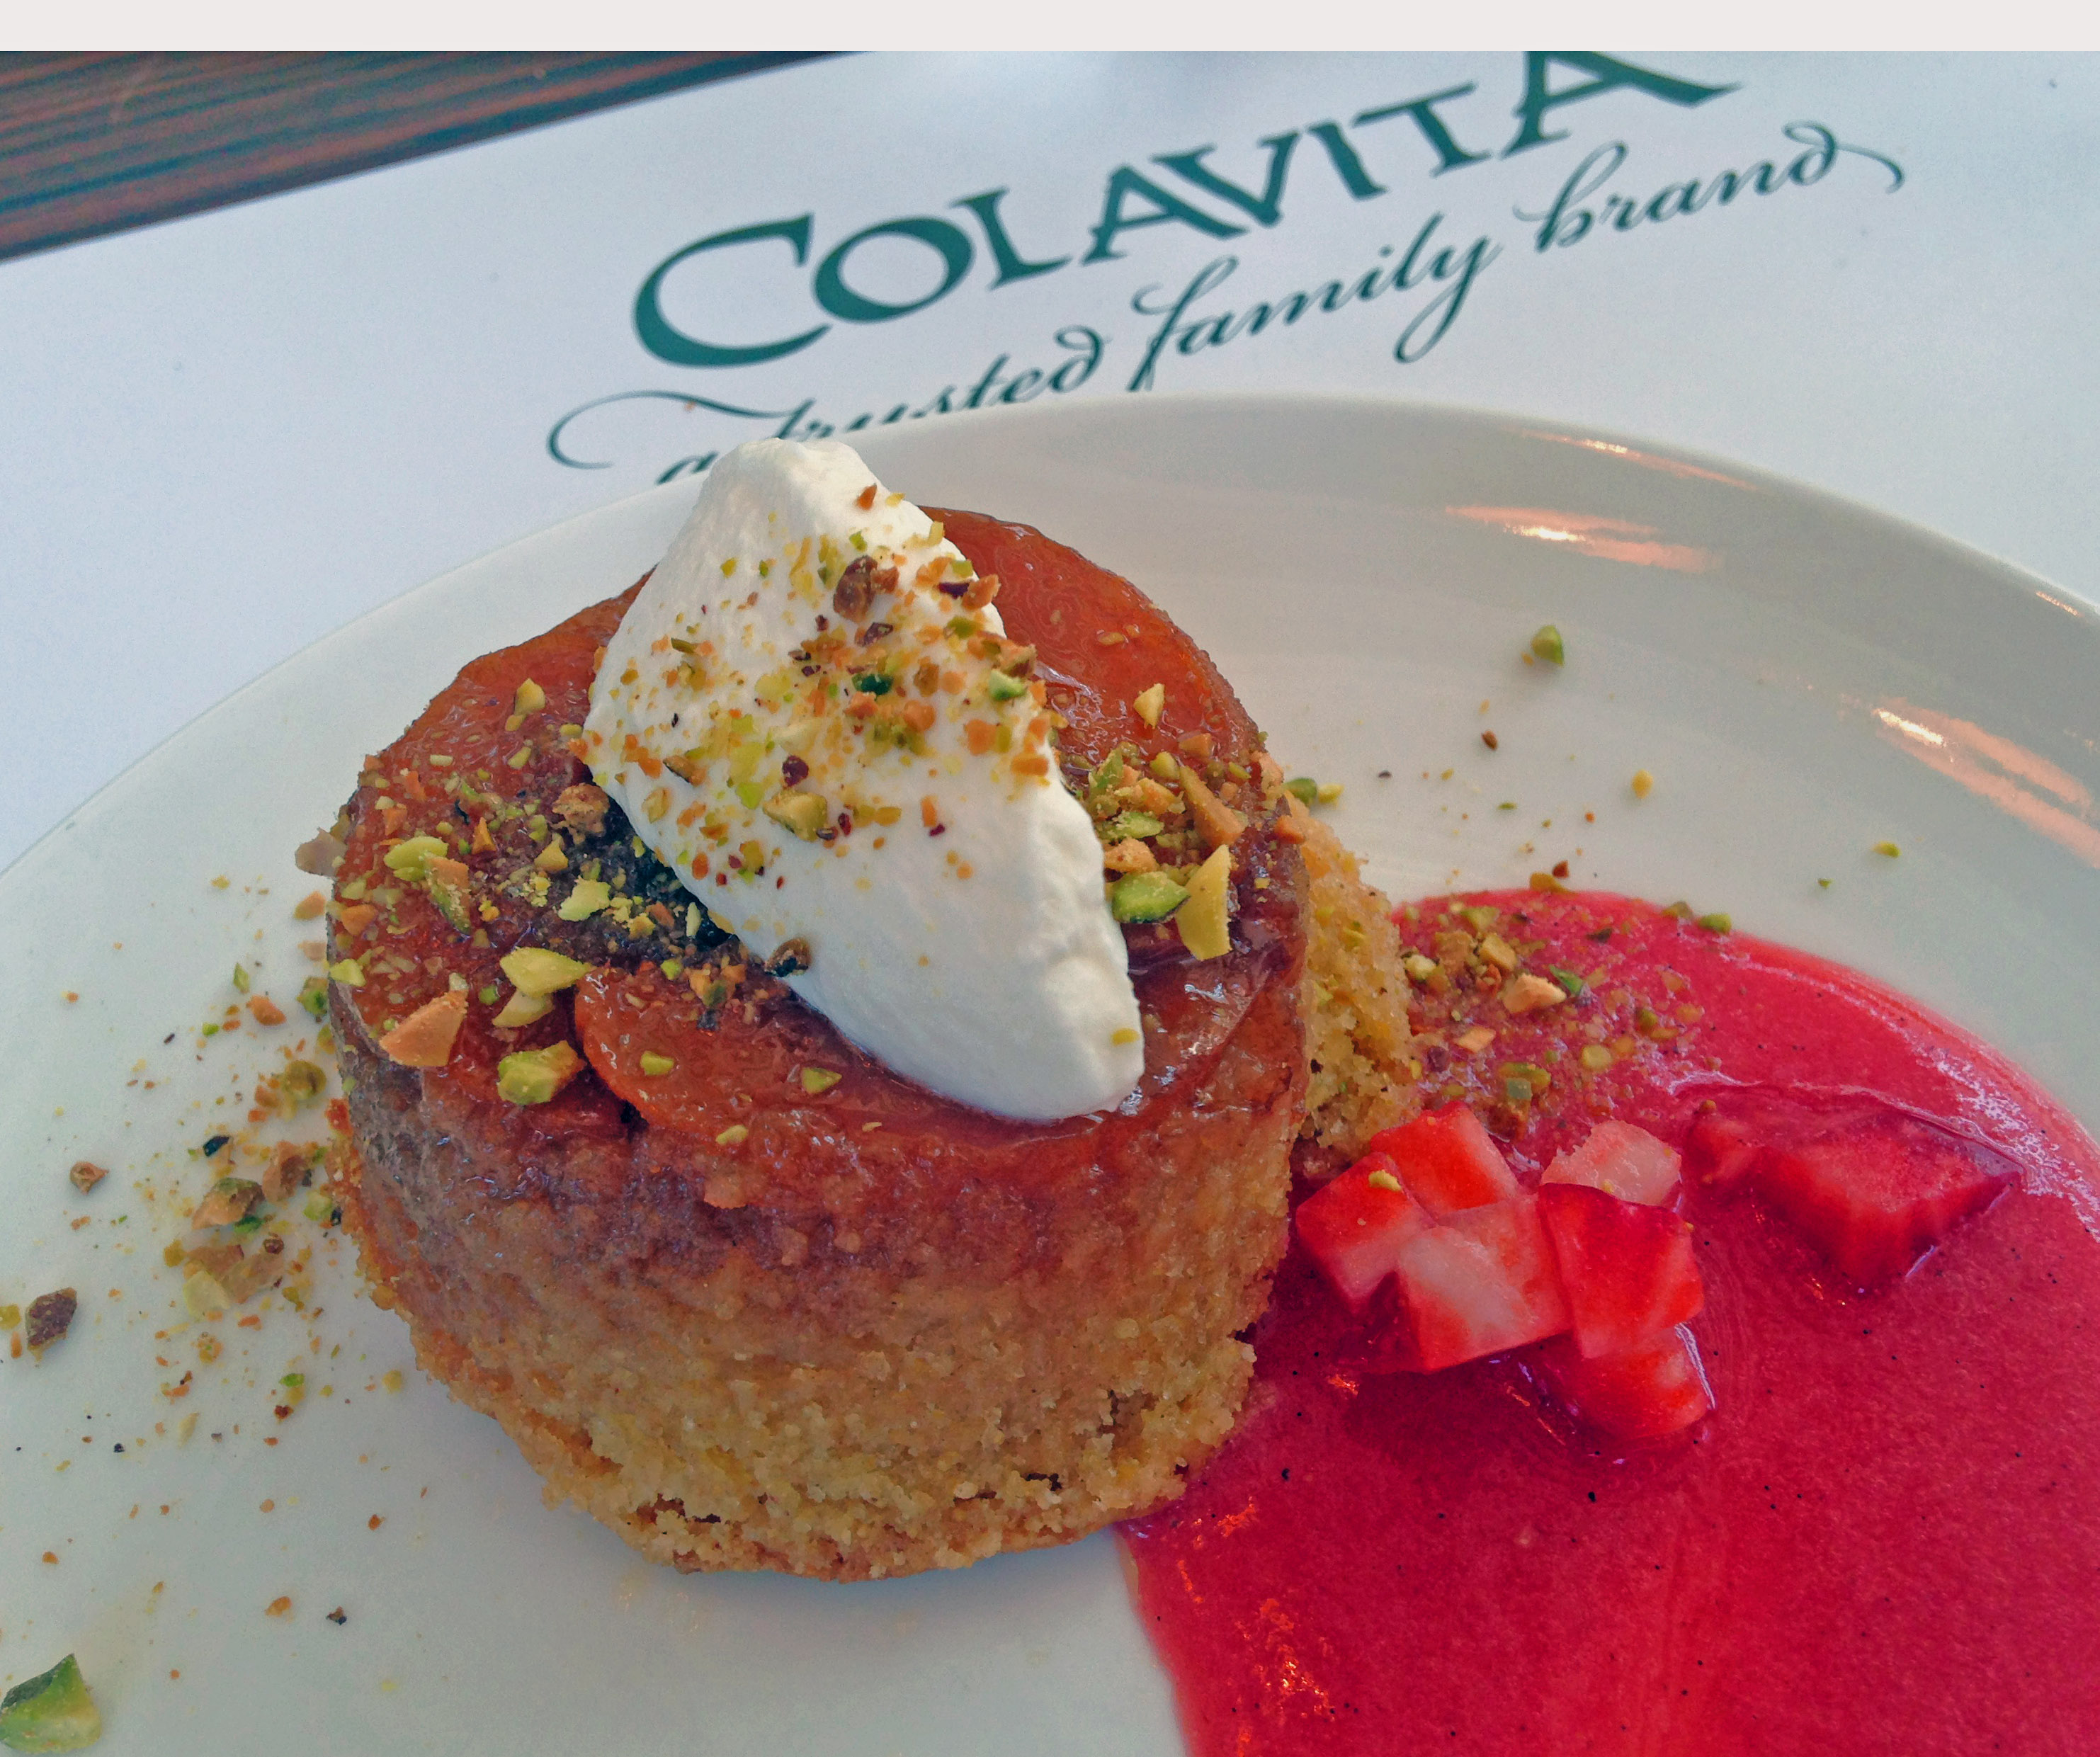 7. Colavita Cake